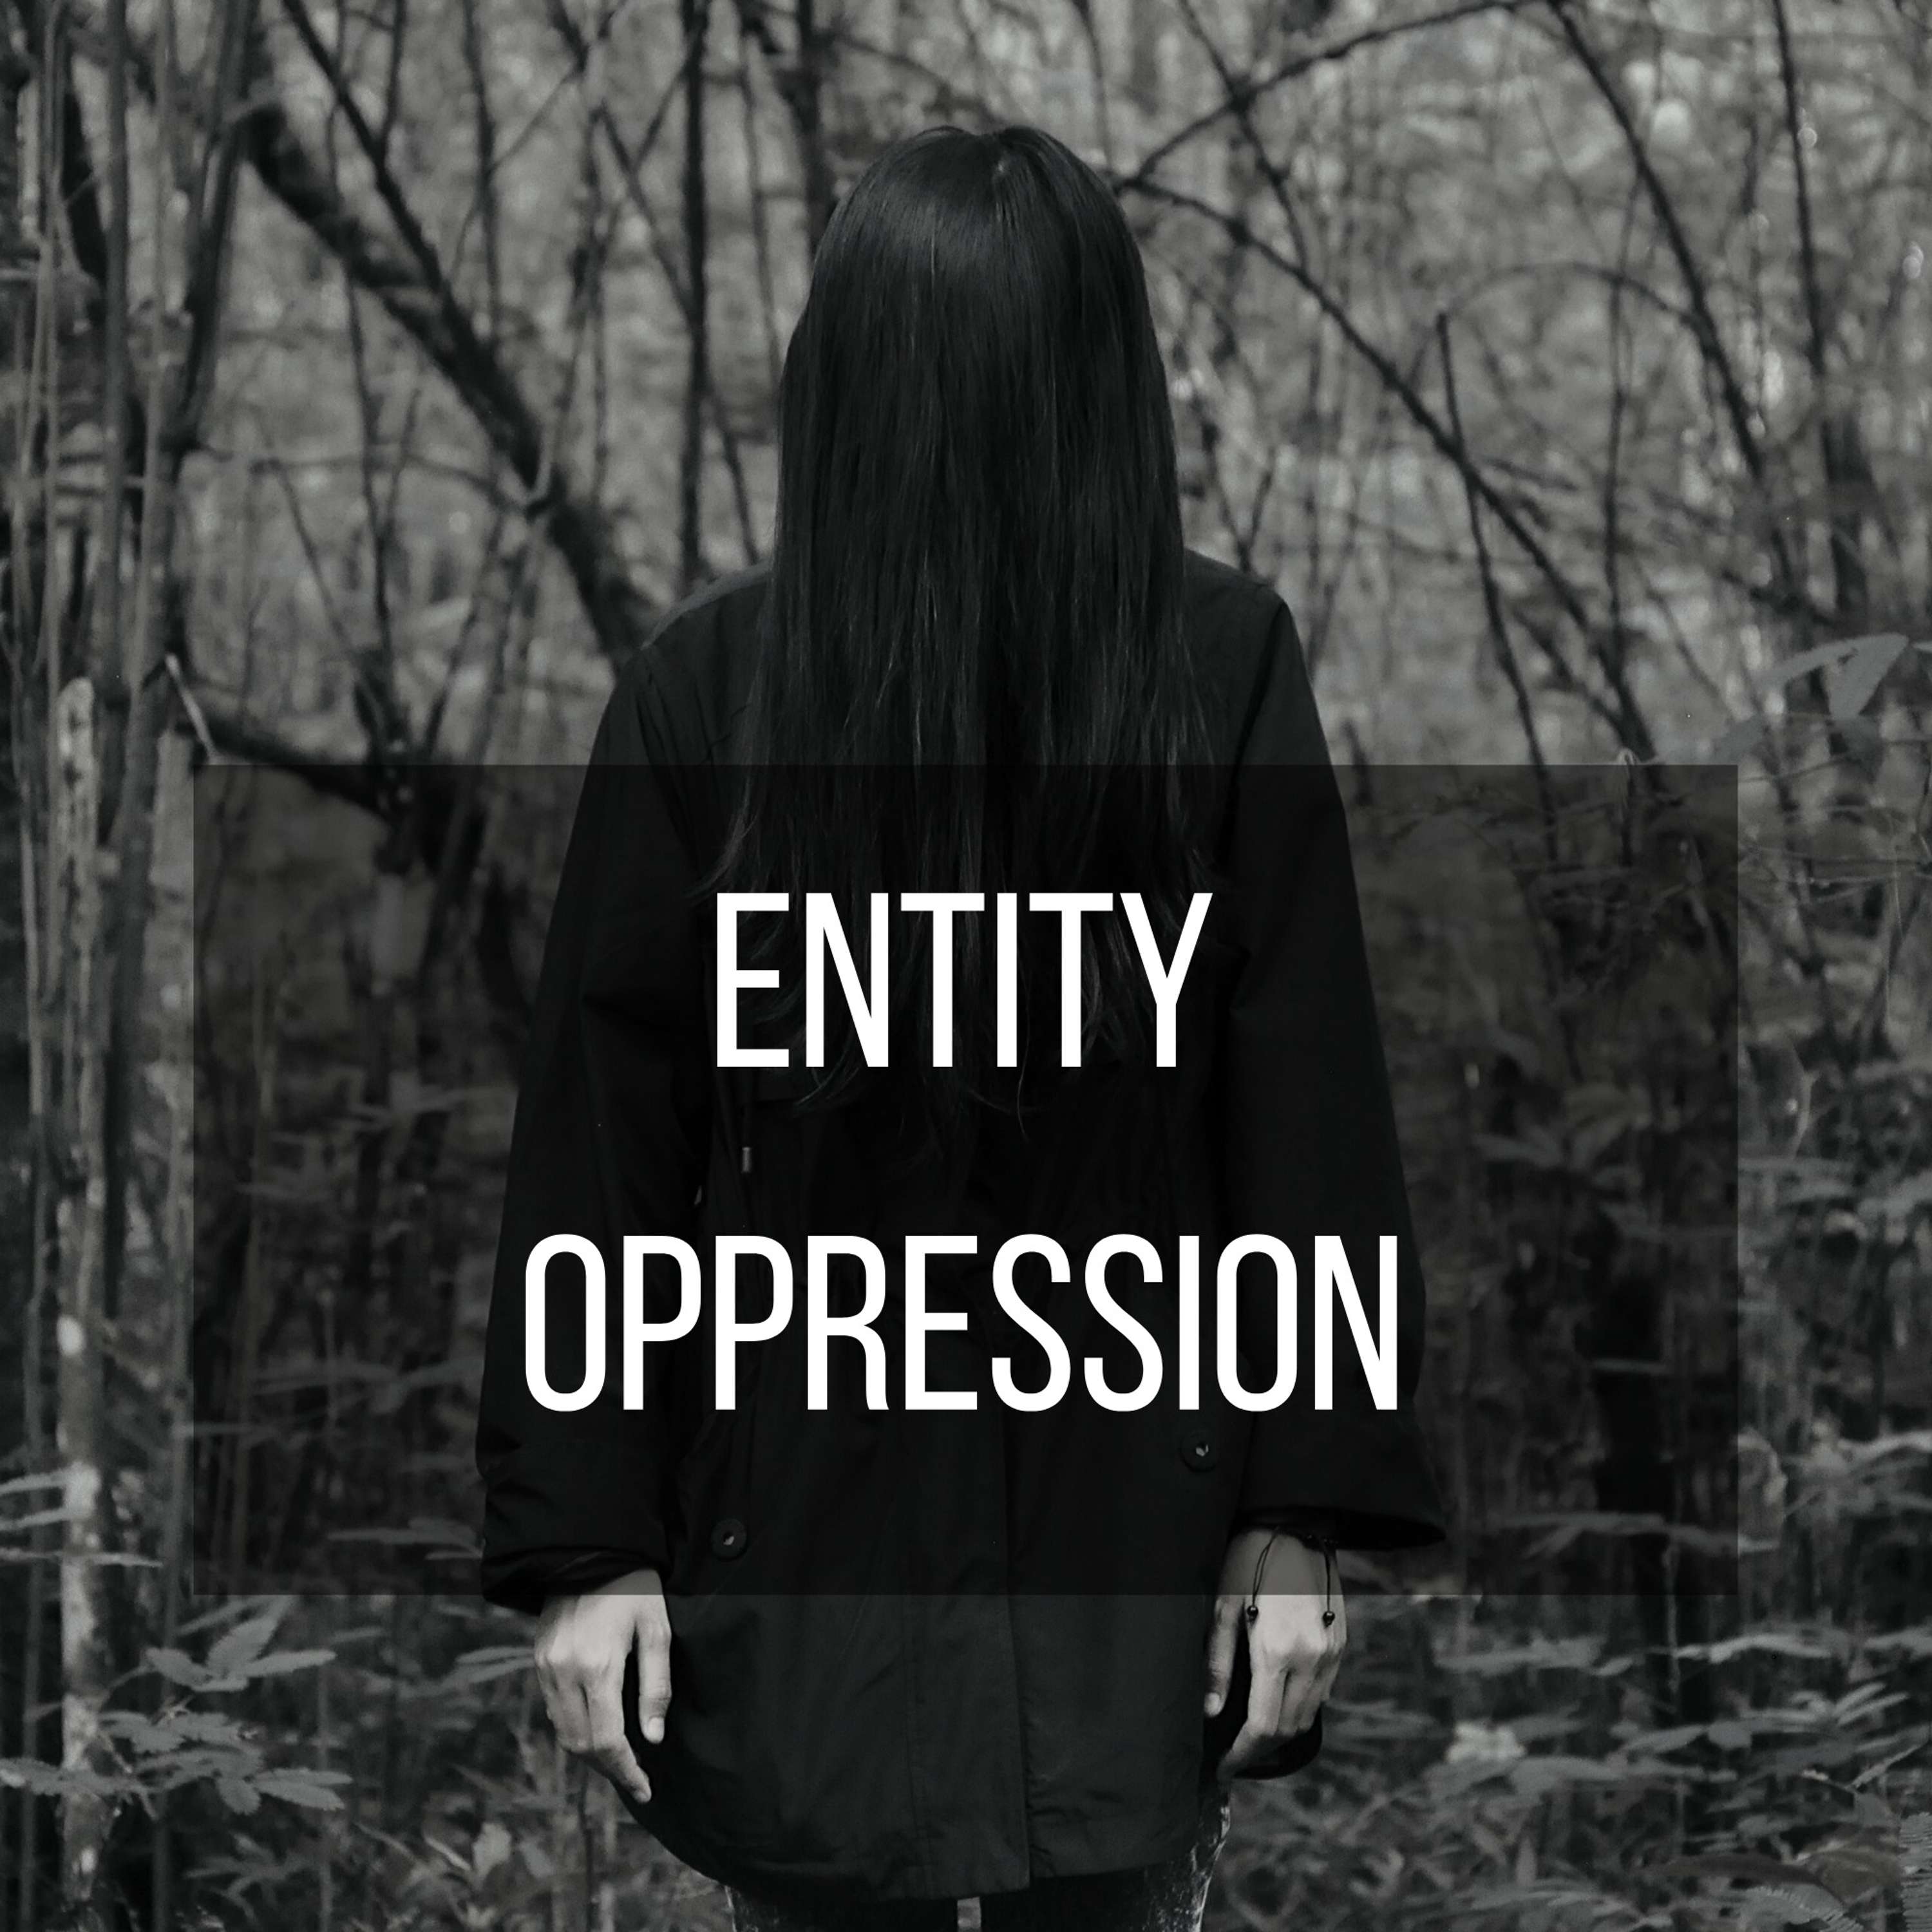 58: Entity Oppression